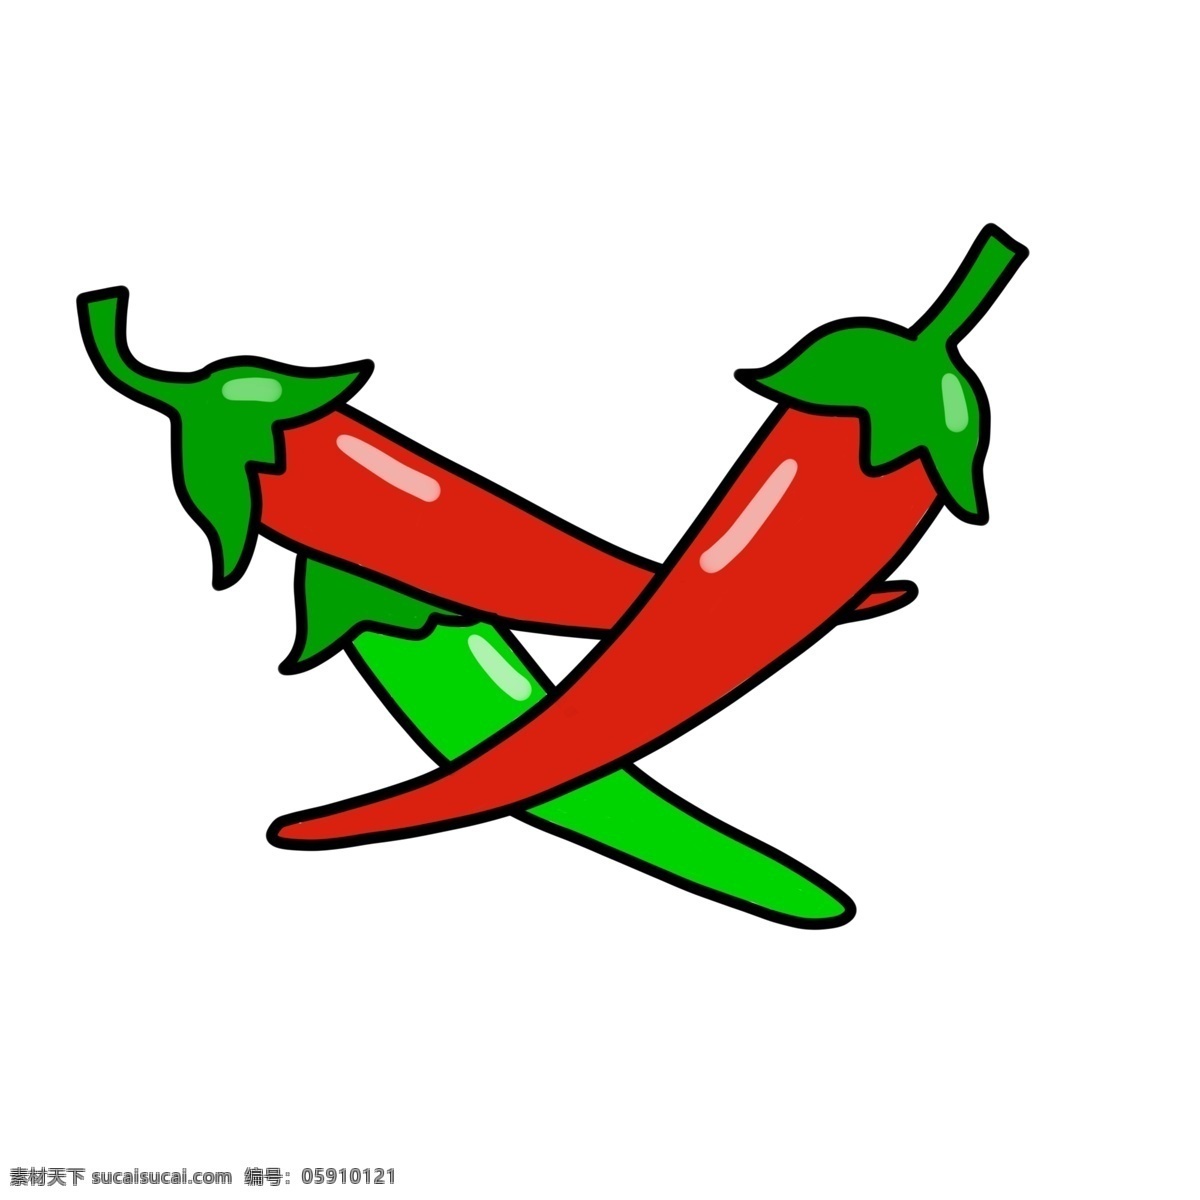 辣椒 辣味 辣子 火辣 卡通 装饰 装饰画 生长 自然 种植 蔬菜 辣 红色 朝天椒 调味品 食物 叶子 绿色食品 健康